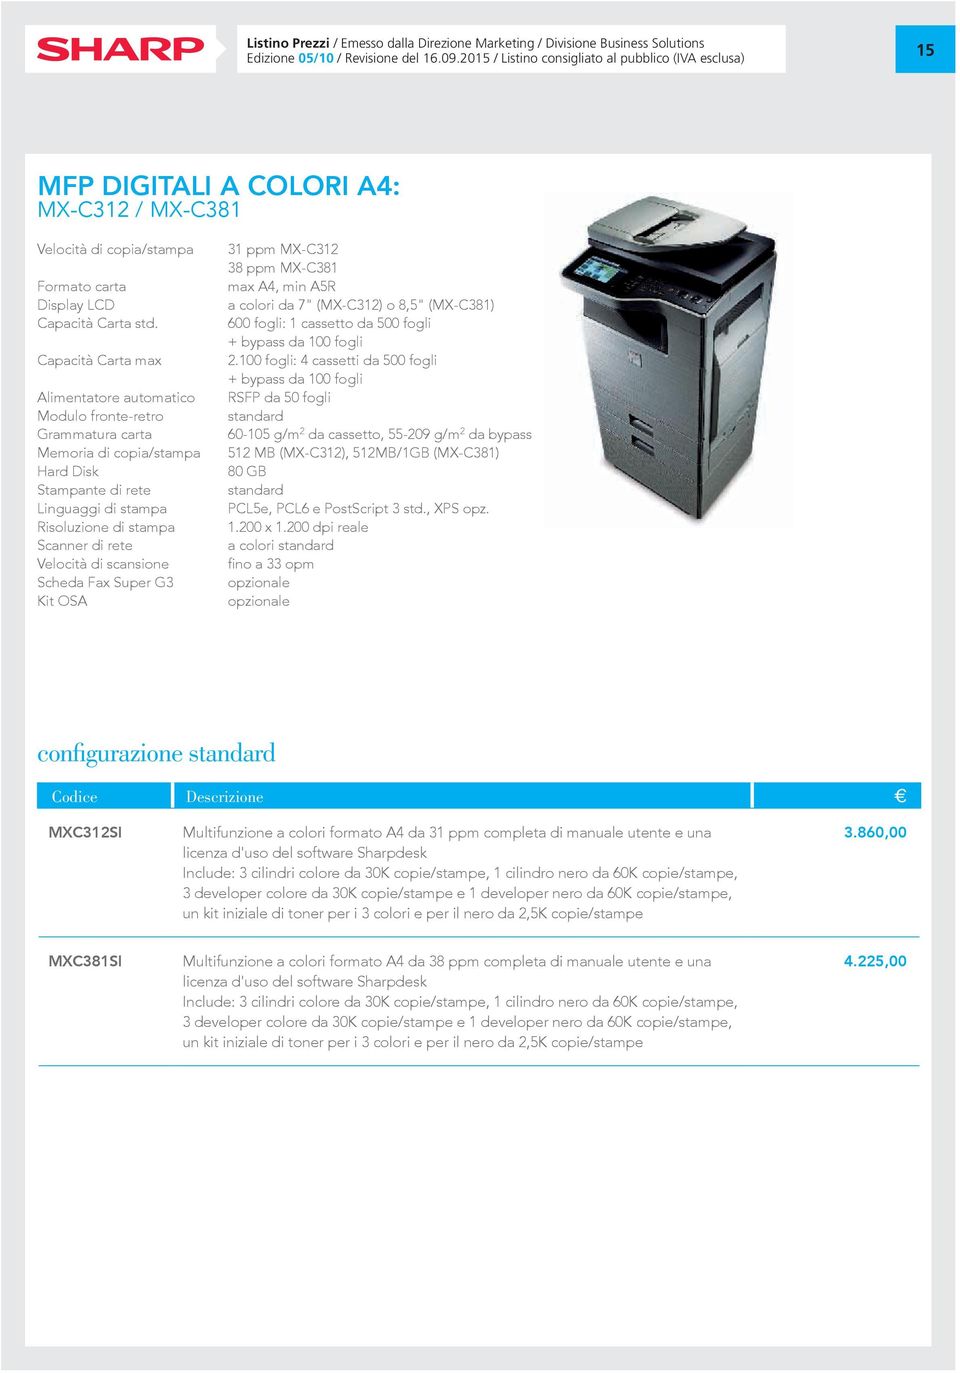 Capacità Carta max Alimentatore automatico Modulo fronte-retro Grammatura carta Memoria di copia/stampa Hard Disk Stampante di rete Linguaggi di stampa Risoluzione di stampa Scanner di rete Velocità